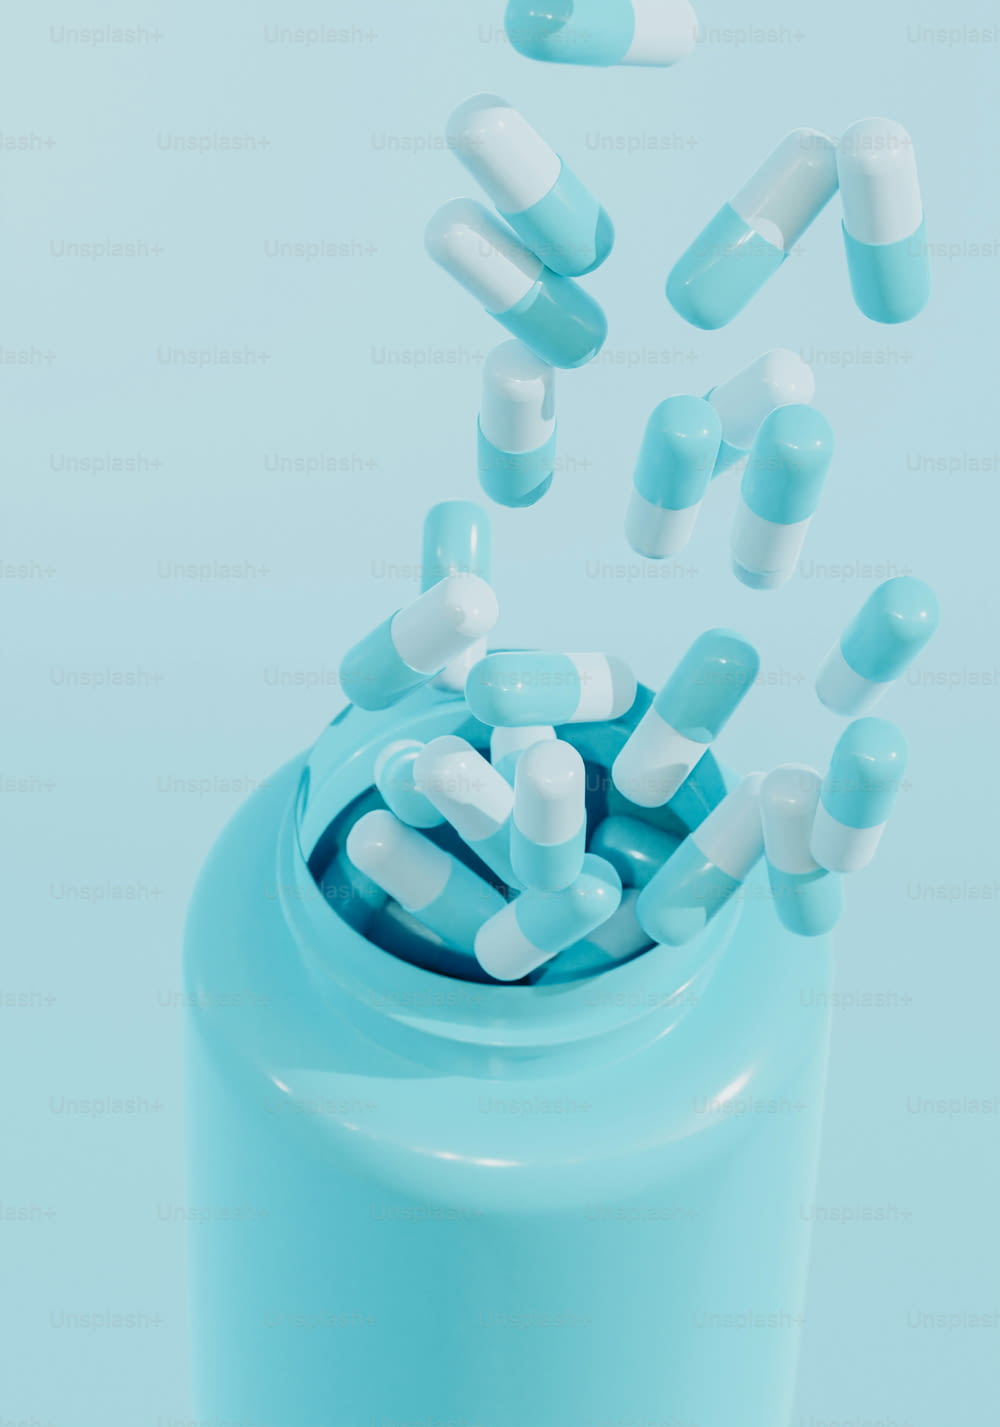 pills falling out of a blue pill bottle